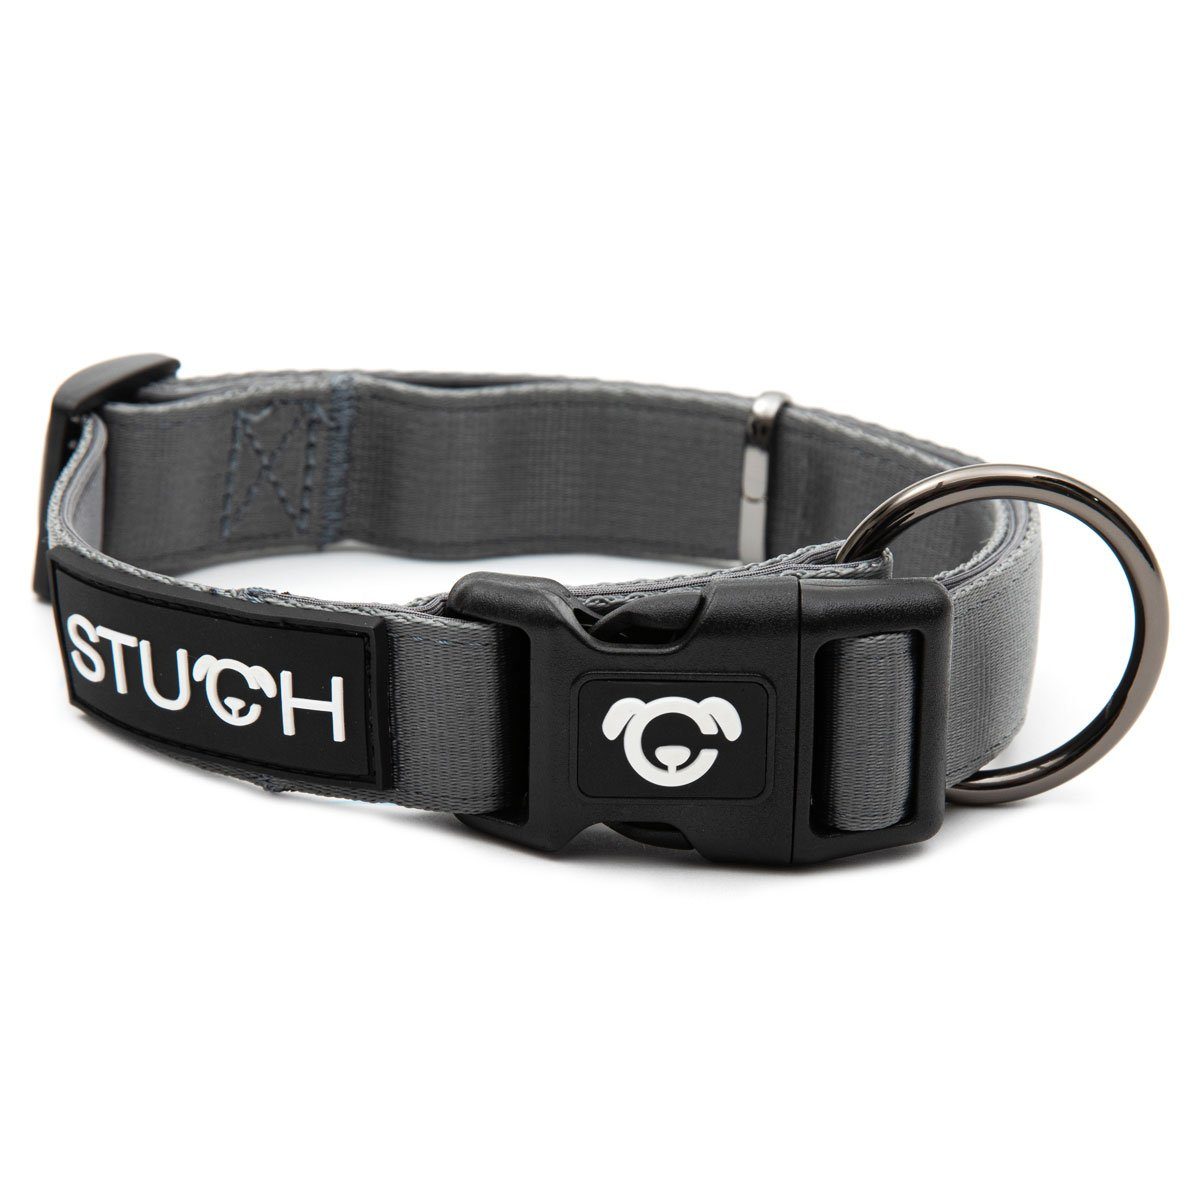 STUCH Hunde-Halsband STUCH Hundehalsband – verstellbares und gepolstertes Nylon Hunde Halsband – Für kleine, mittlere und große Hunde